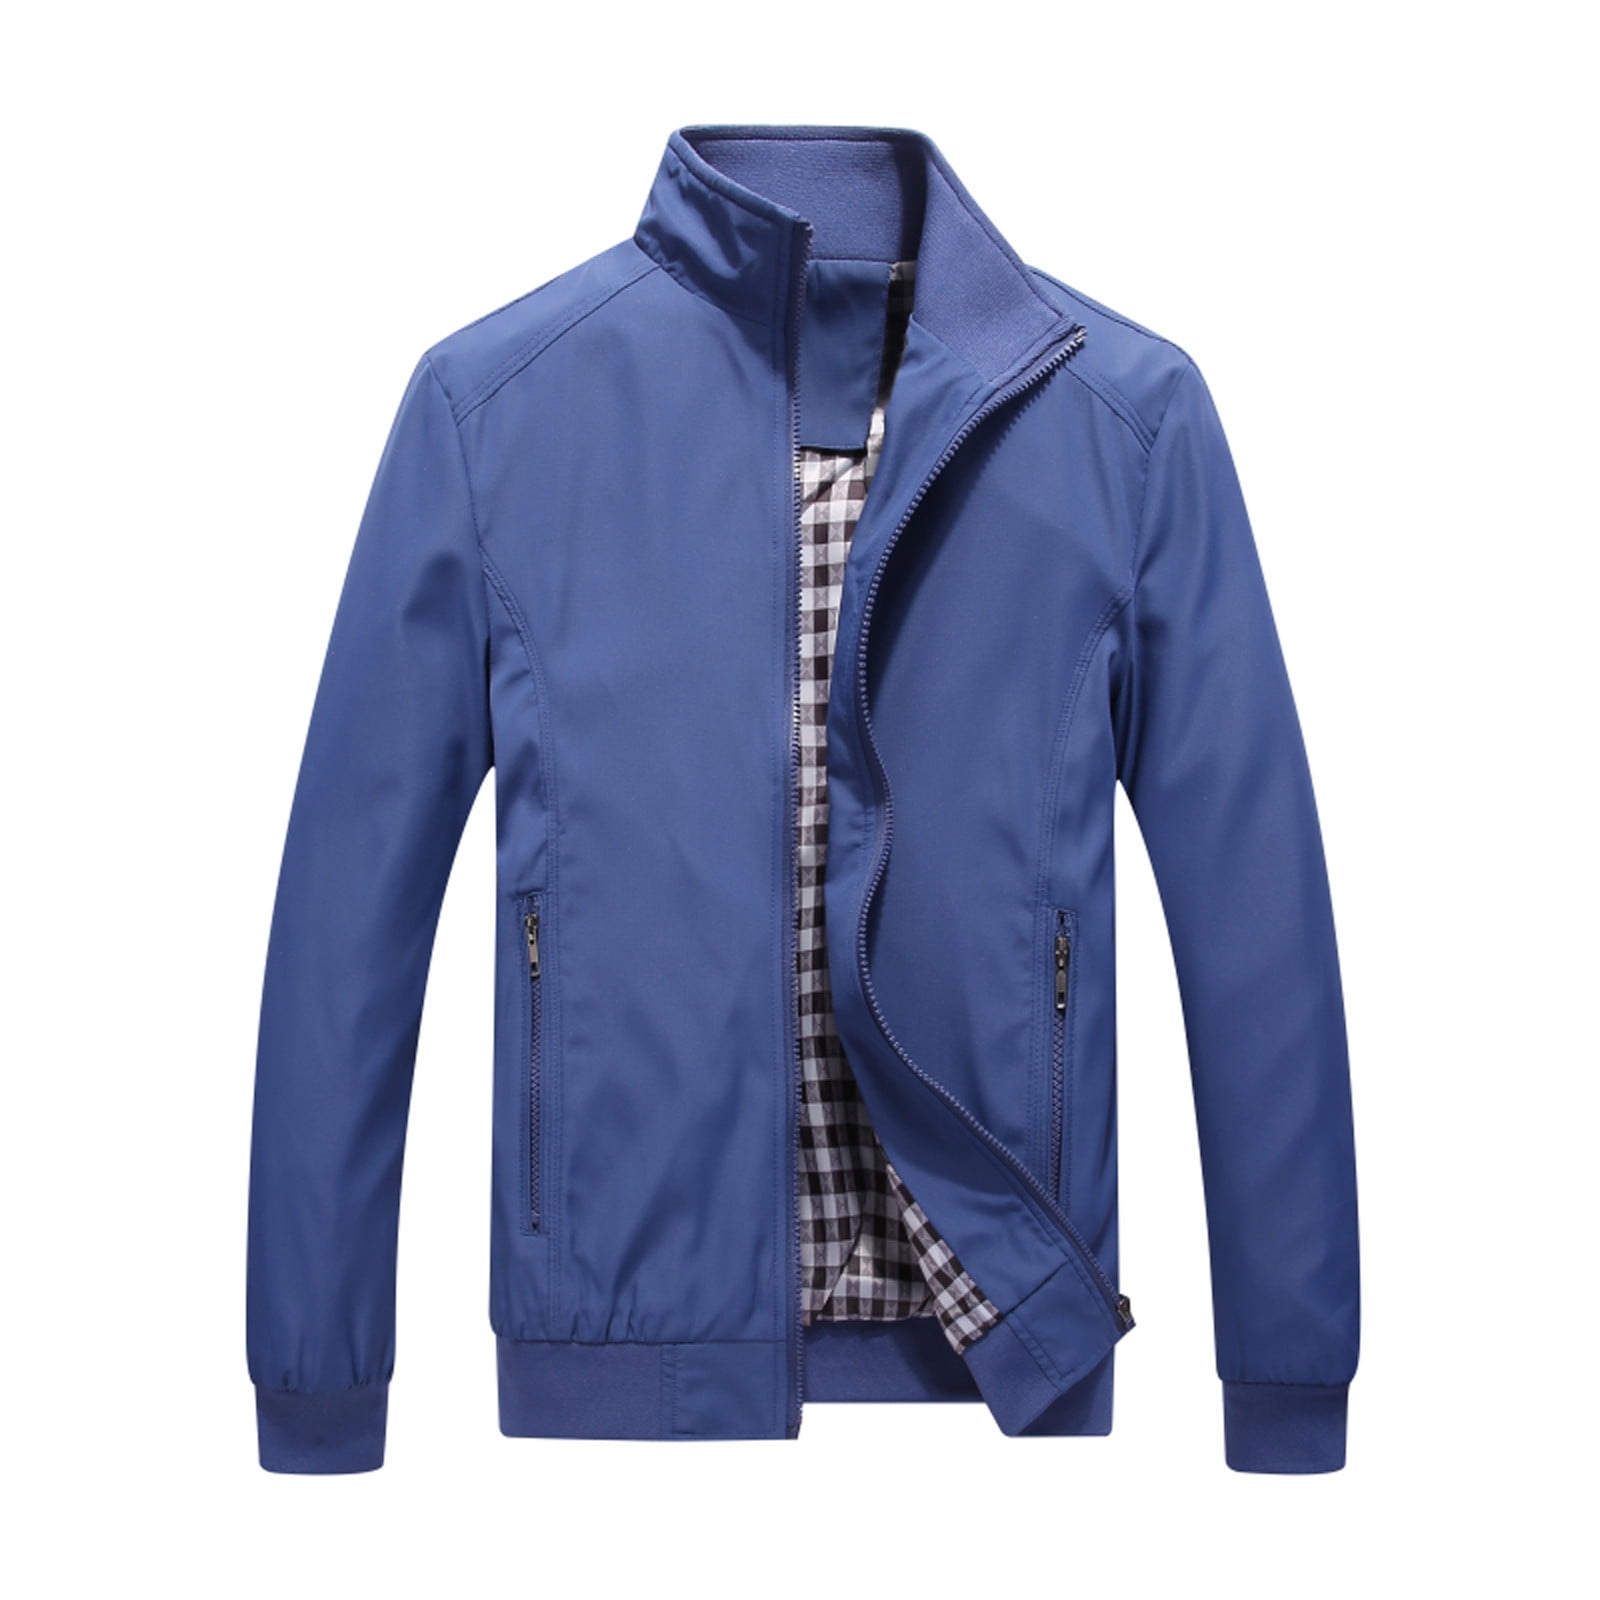 DAETIROS Hoodless Jackets Boy Sports Jacket Zipper Pocket Ribbed Hem  Non-hooded Sports Solid Top Coat Dark Blue Size XXL 